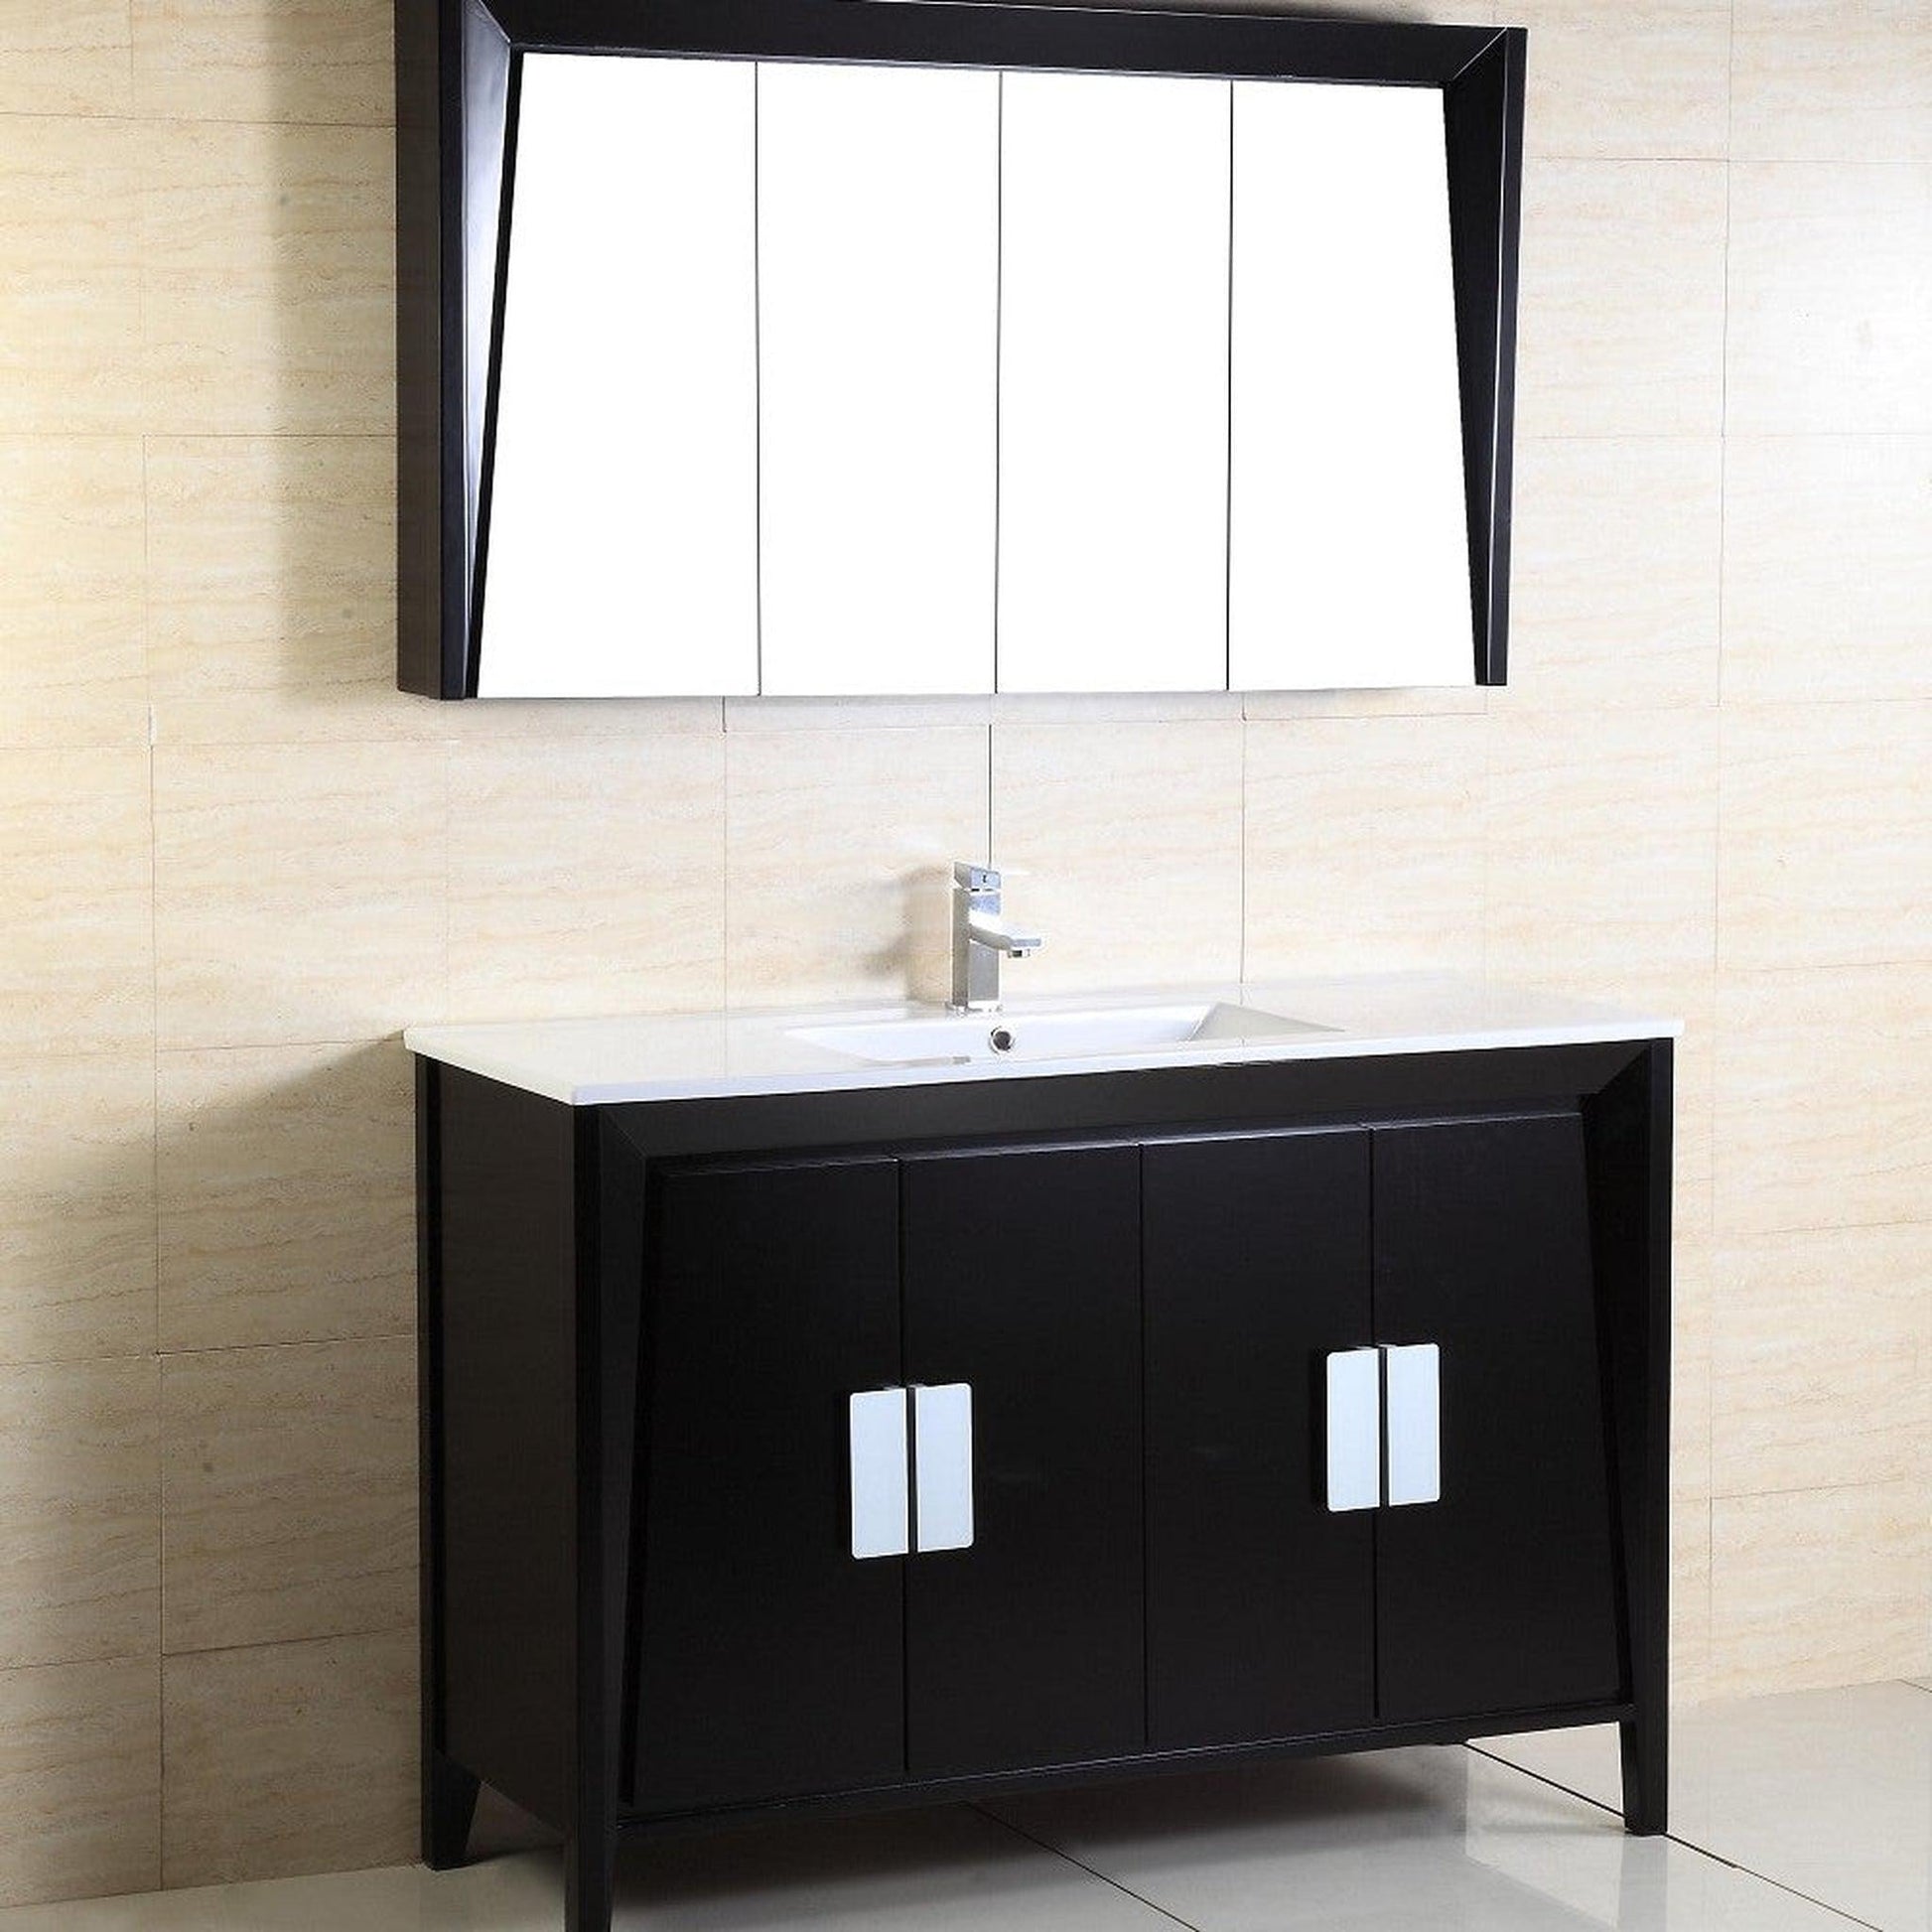 Bellaterra Home 48" 4-Door Dark Espresso Freestanding Vanity Set With Ceramic Integrated Sink and Ceramic Top